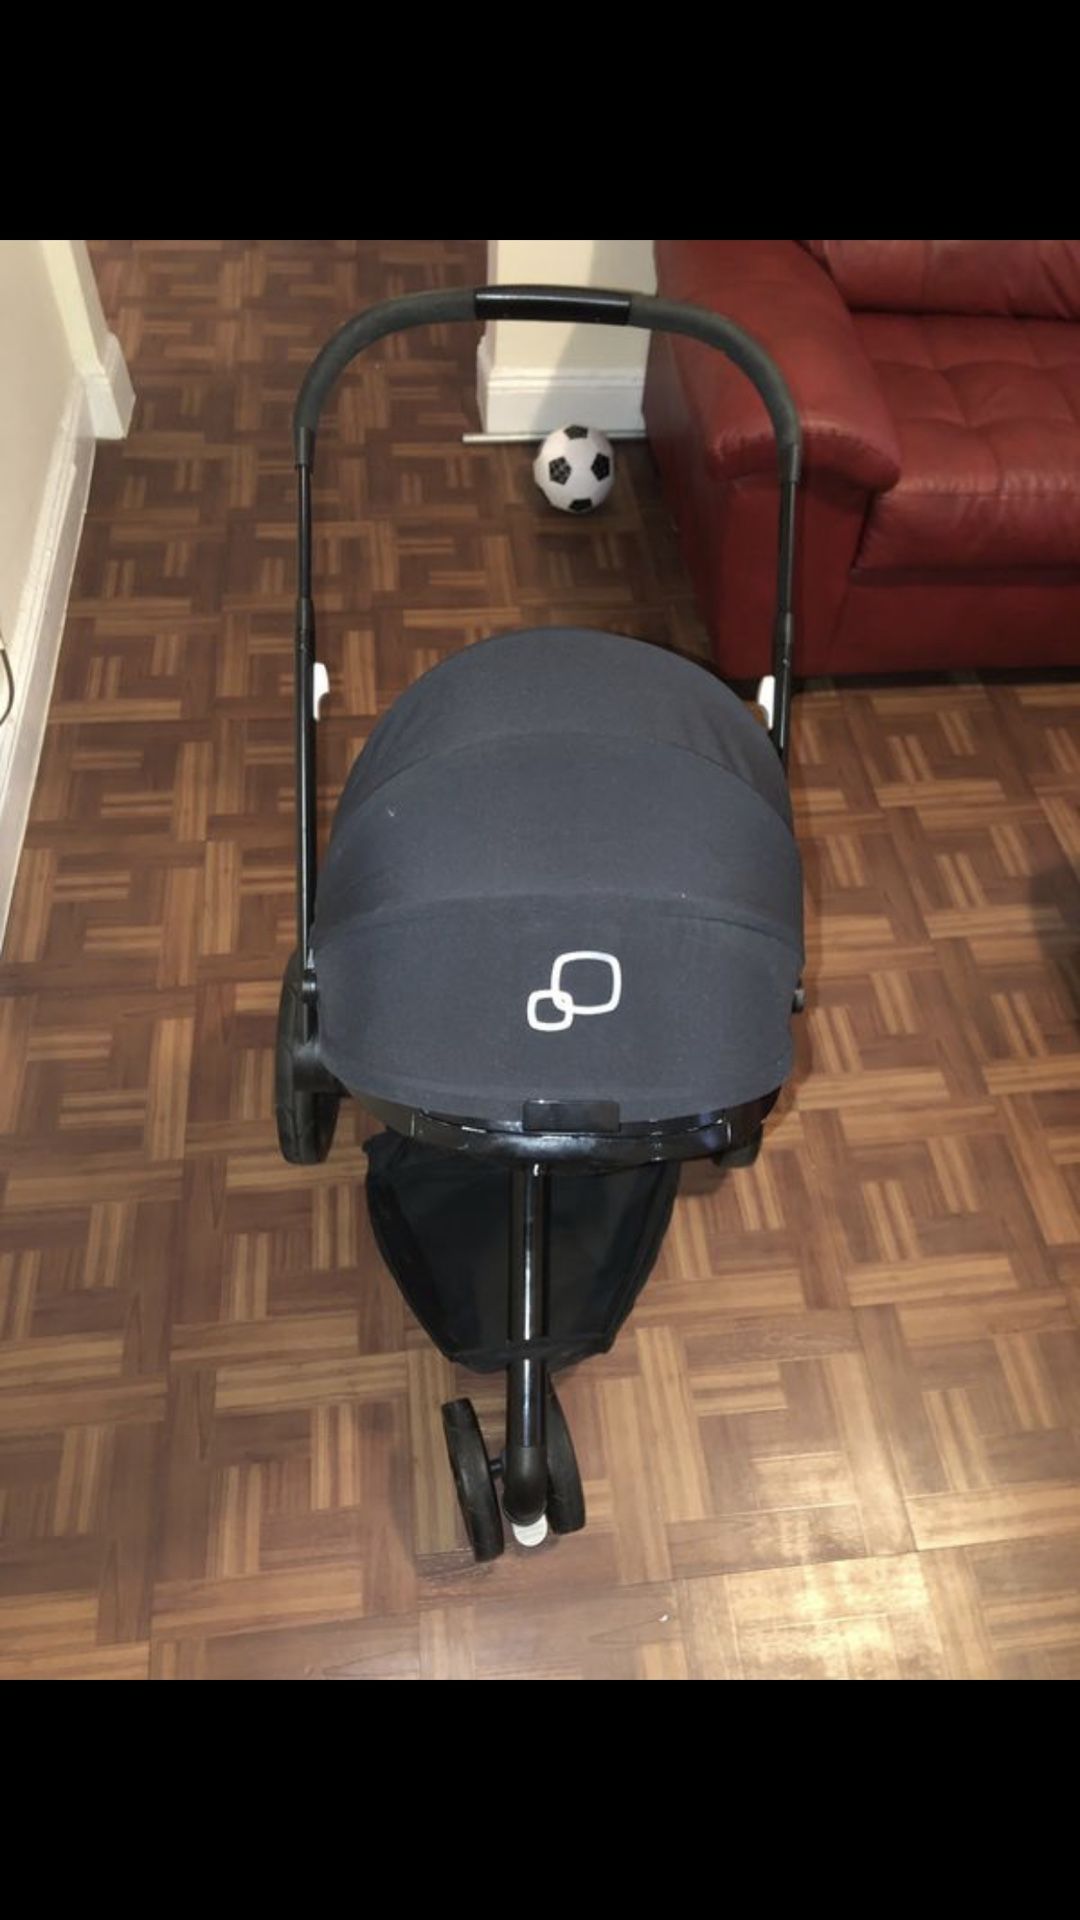 Quinny mood stroller - black